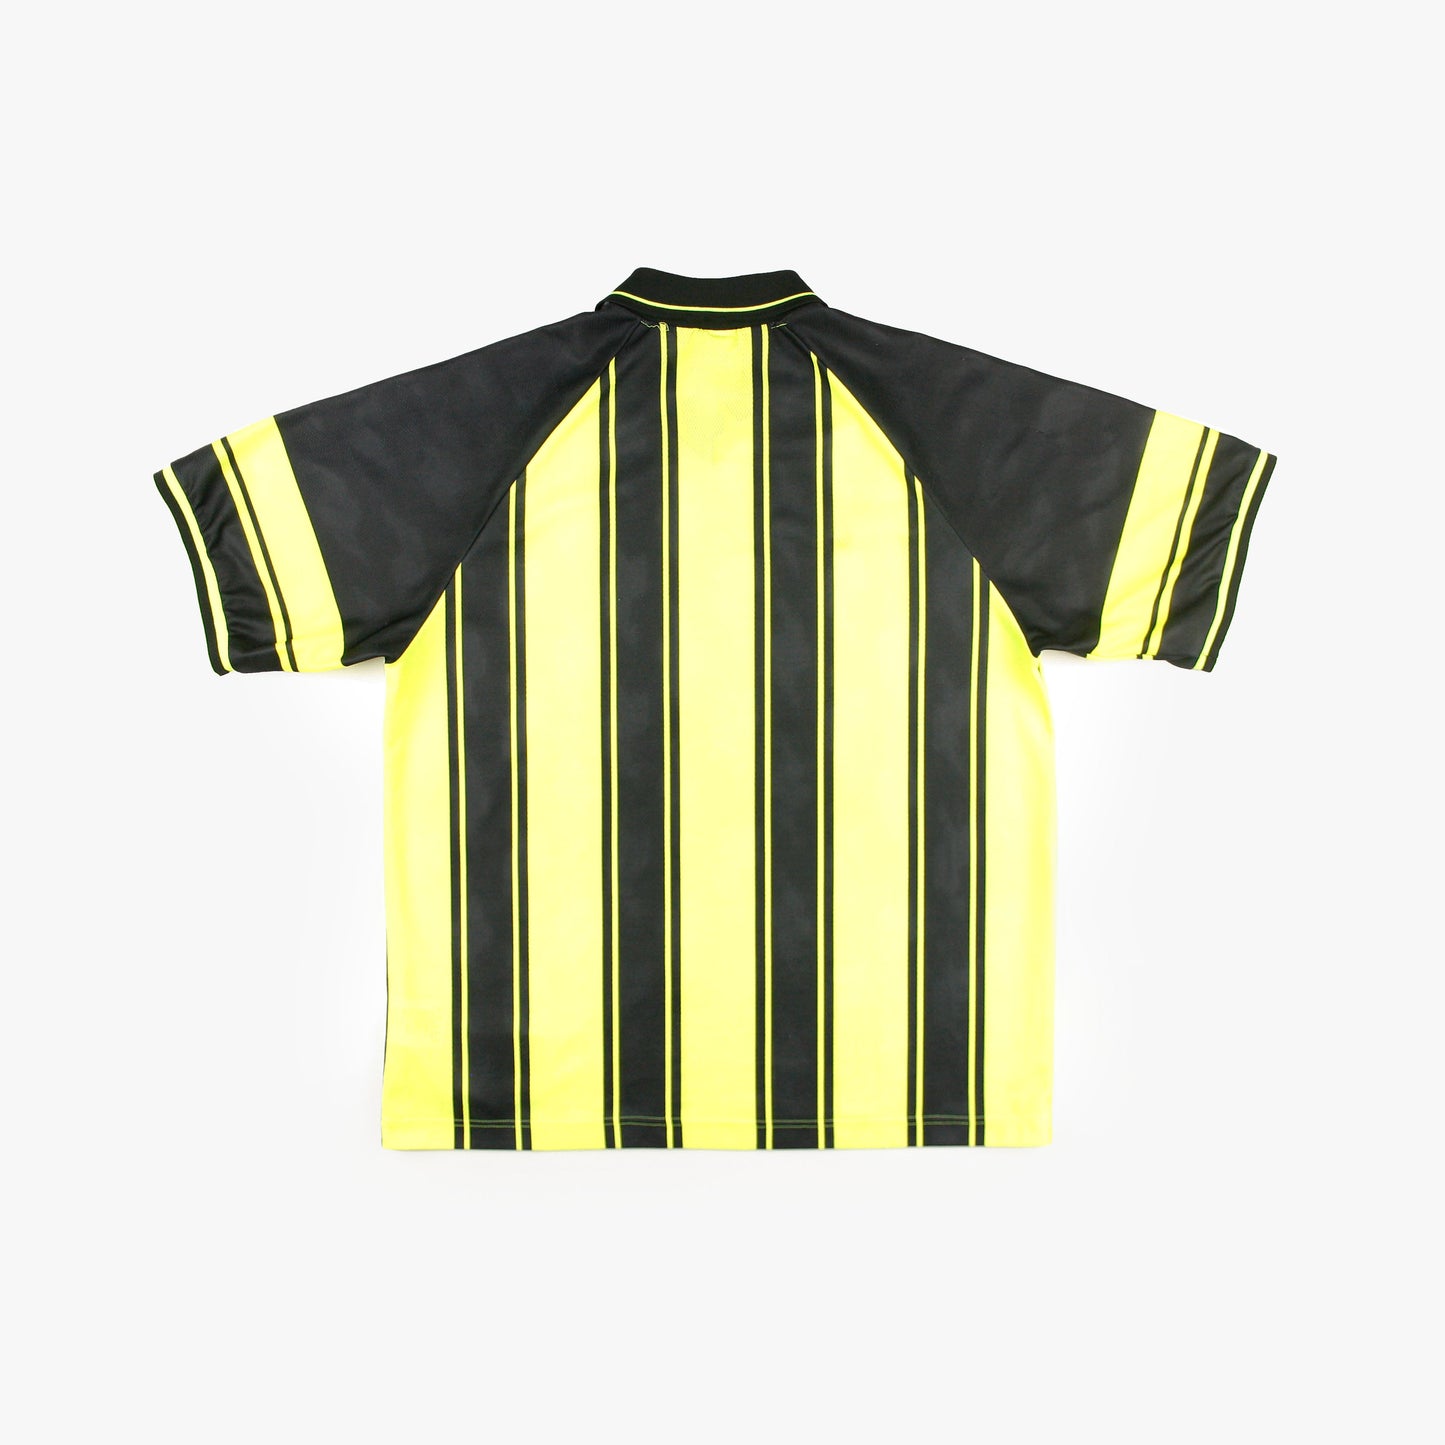 Nike Team 90s • Camiseta Genérica • L